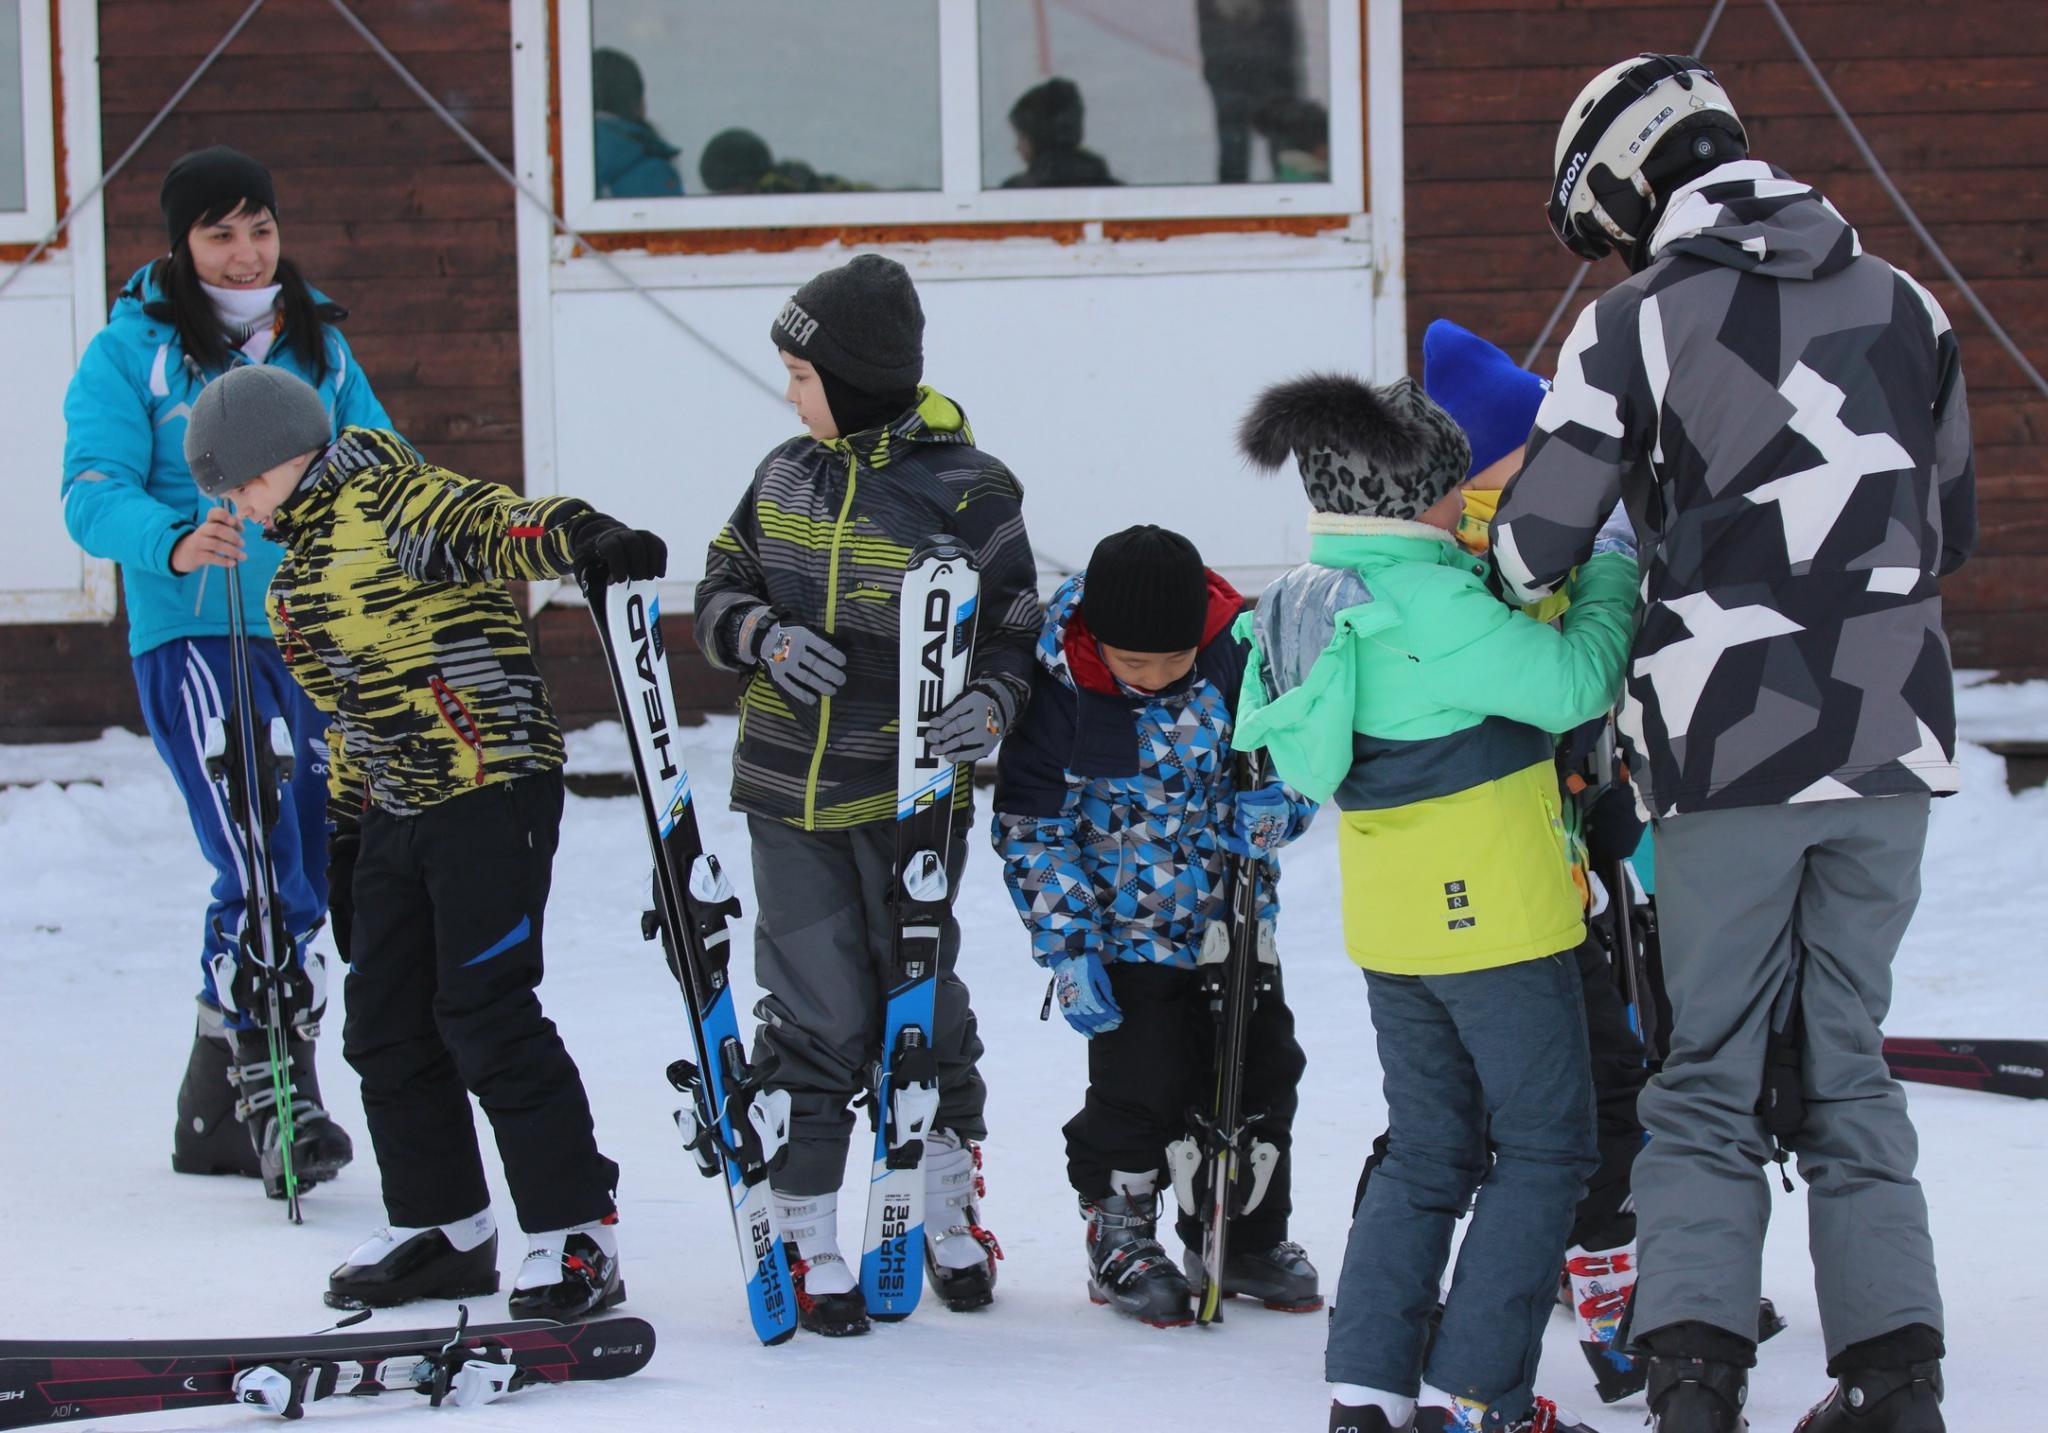 Старт проекта "Горные лыжи в школу"